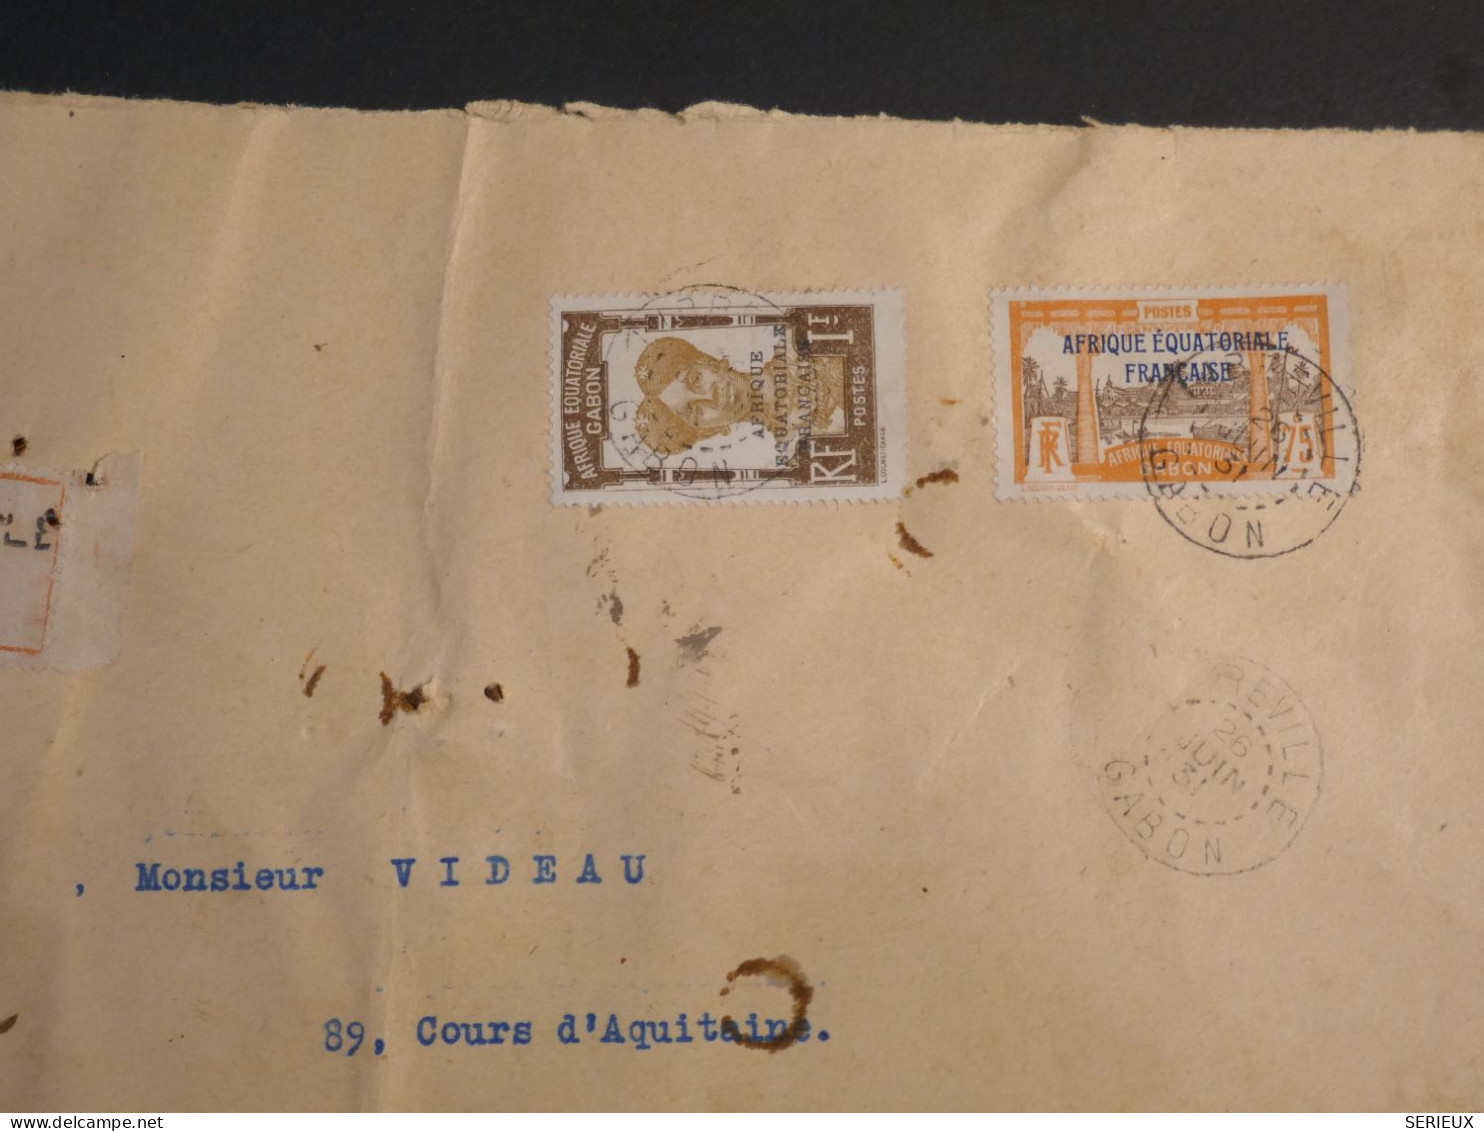 DM 21 AEF GABON BELLE   LETTRE RECO 1931 LIBREVILLE A BORDEAUX FRANCE   + +POINCONS + AFF. INTERESSANT+ - Covers & Documents